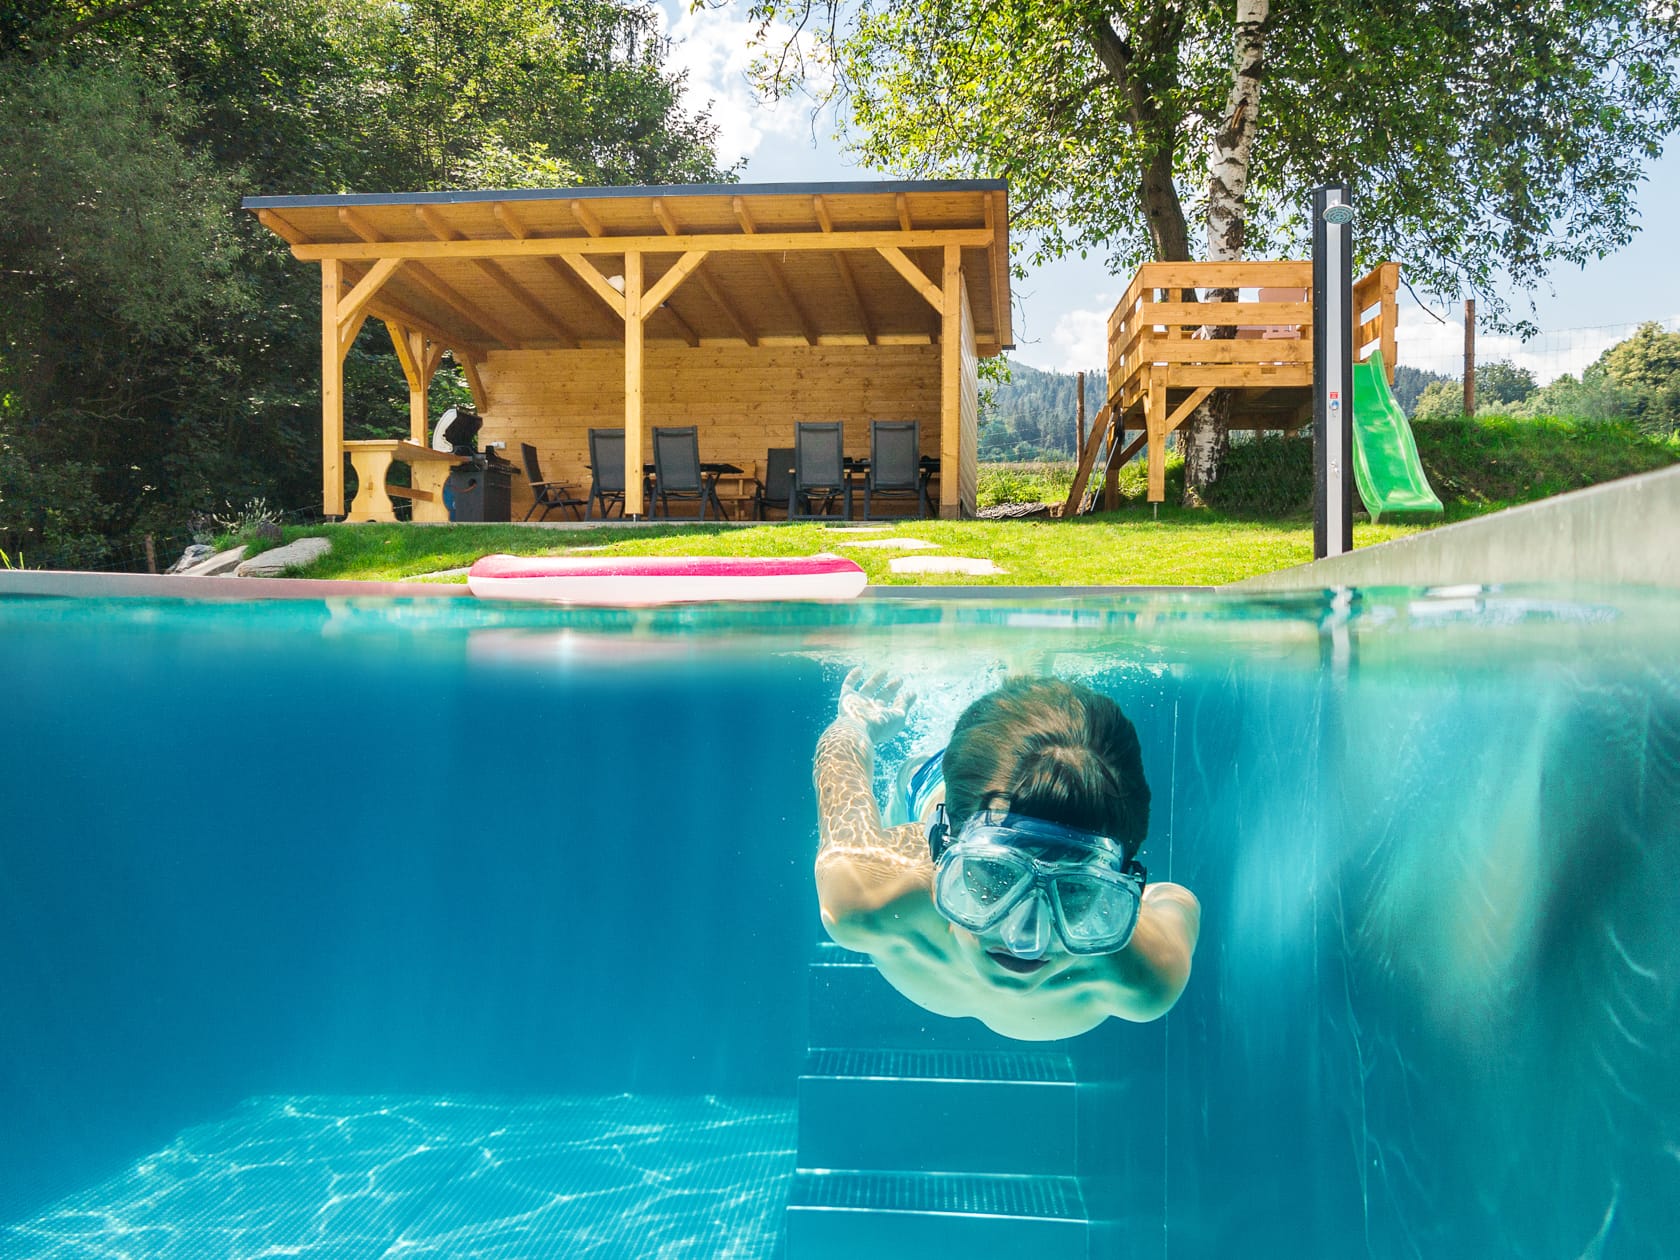 Family house ubytování nerezový bazén s hloubkou 1,4m